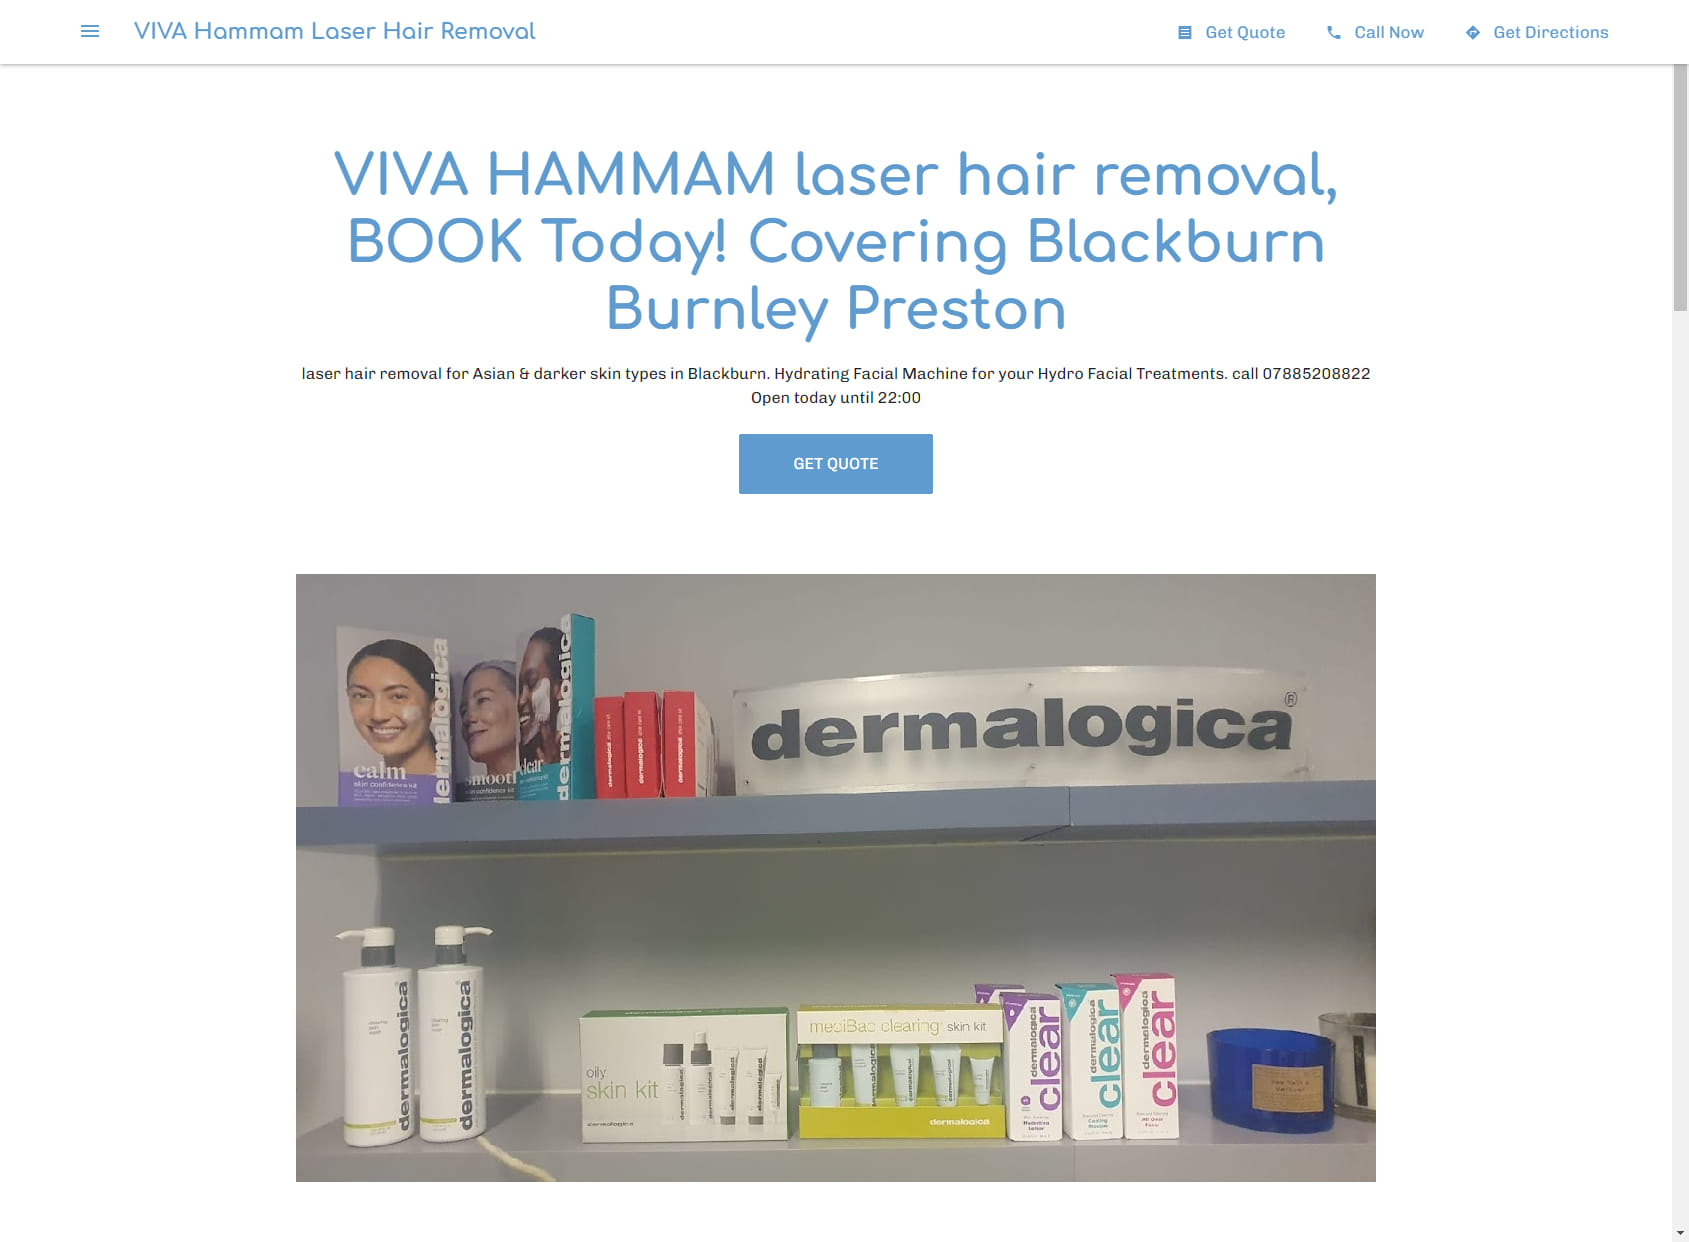 VIVA Hammam Laser Hair Removal